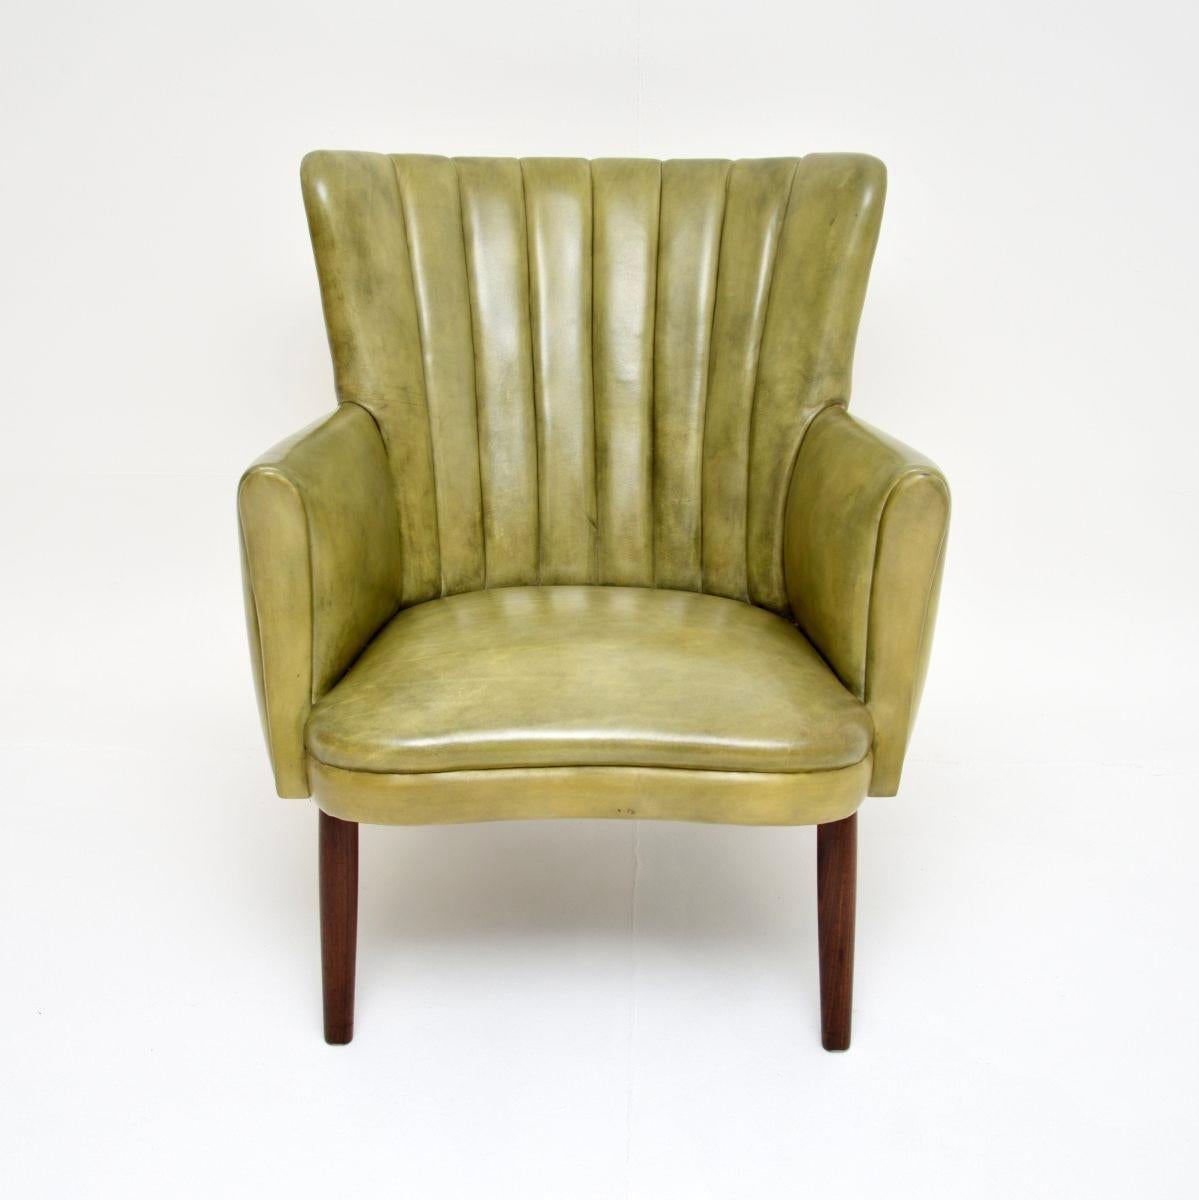 Fauteuil en cuir vintage danois, élégant et extrêmement confortable, signé By. Ce modèle s'appelle le fauteuil Teddy, il est toujours en production aujourd'hui, cependant il s'agit d'une version vintage datant des années 1960.

Il est magnifiquement